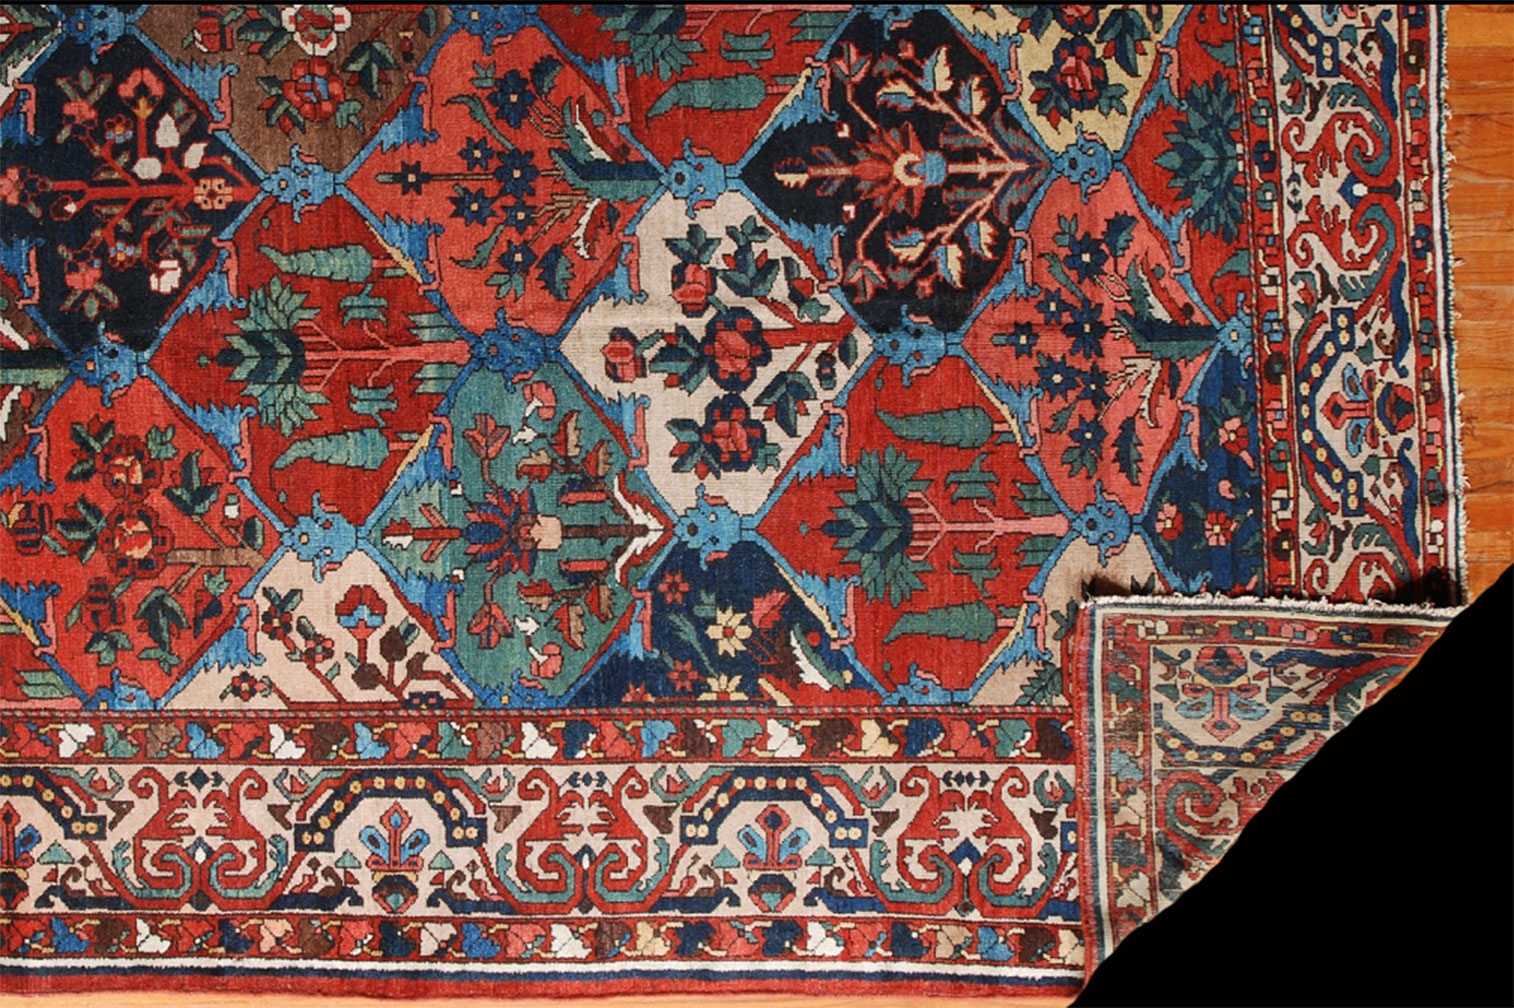 Antique baktiari Carpet - # 52283